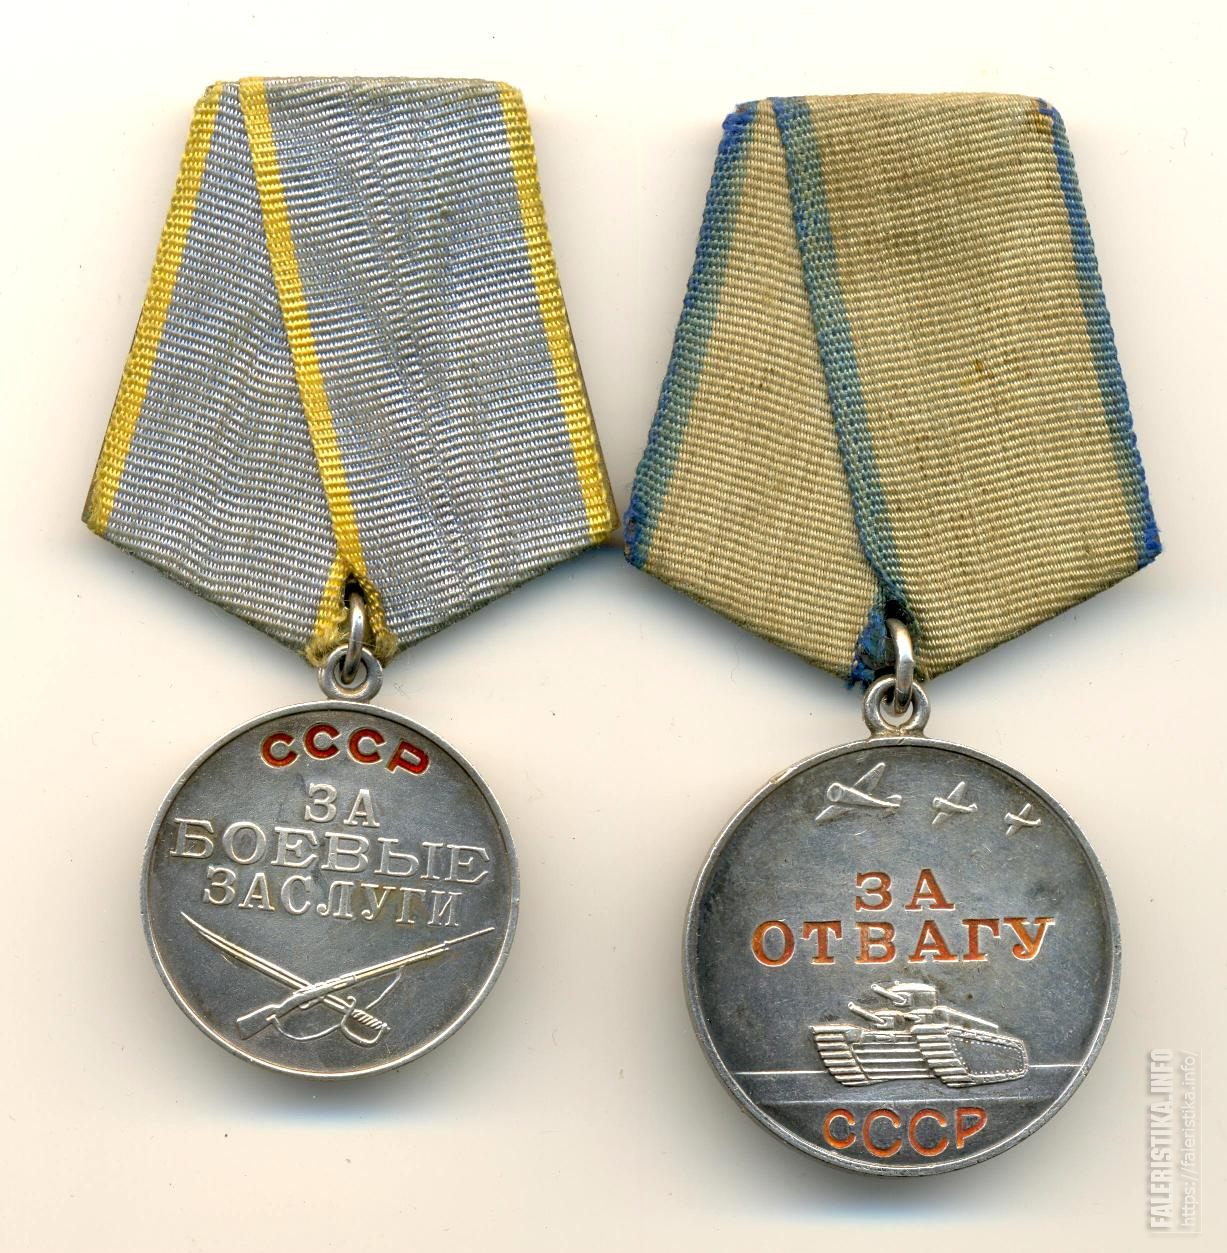 Отвага даль. Отвага. Медаль БЗ СССР. Отвага короткая броня. Боевые ордена СССР БЗ.